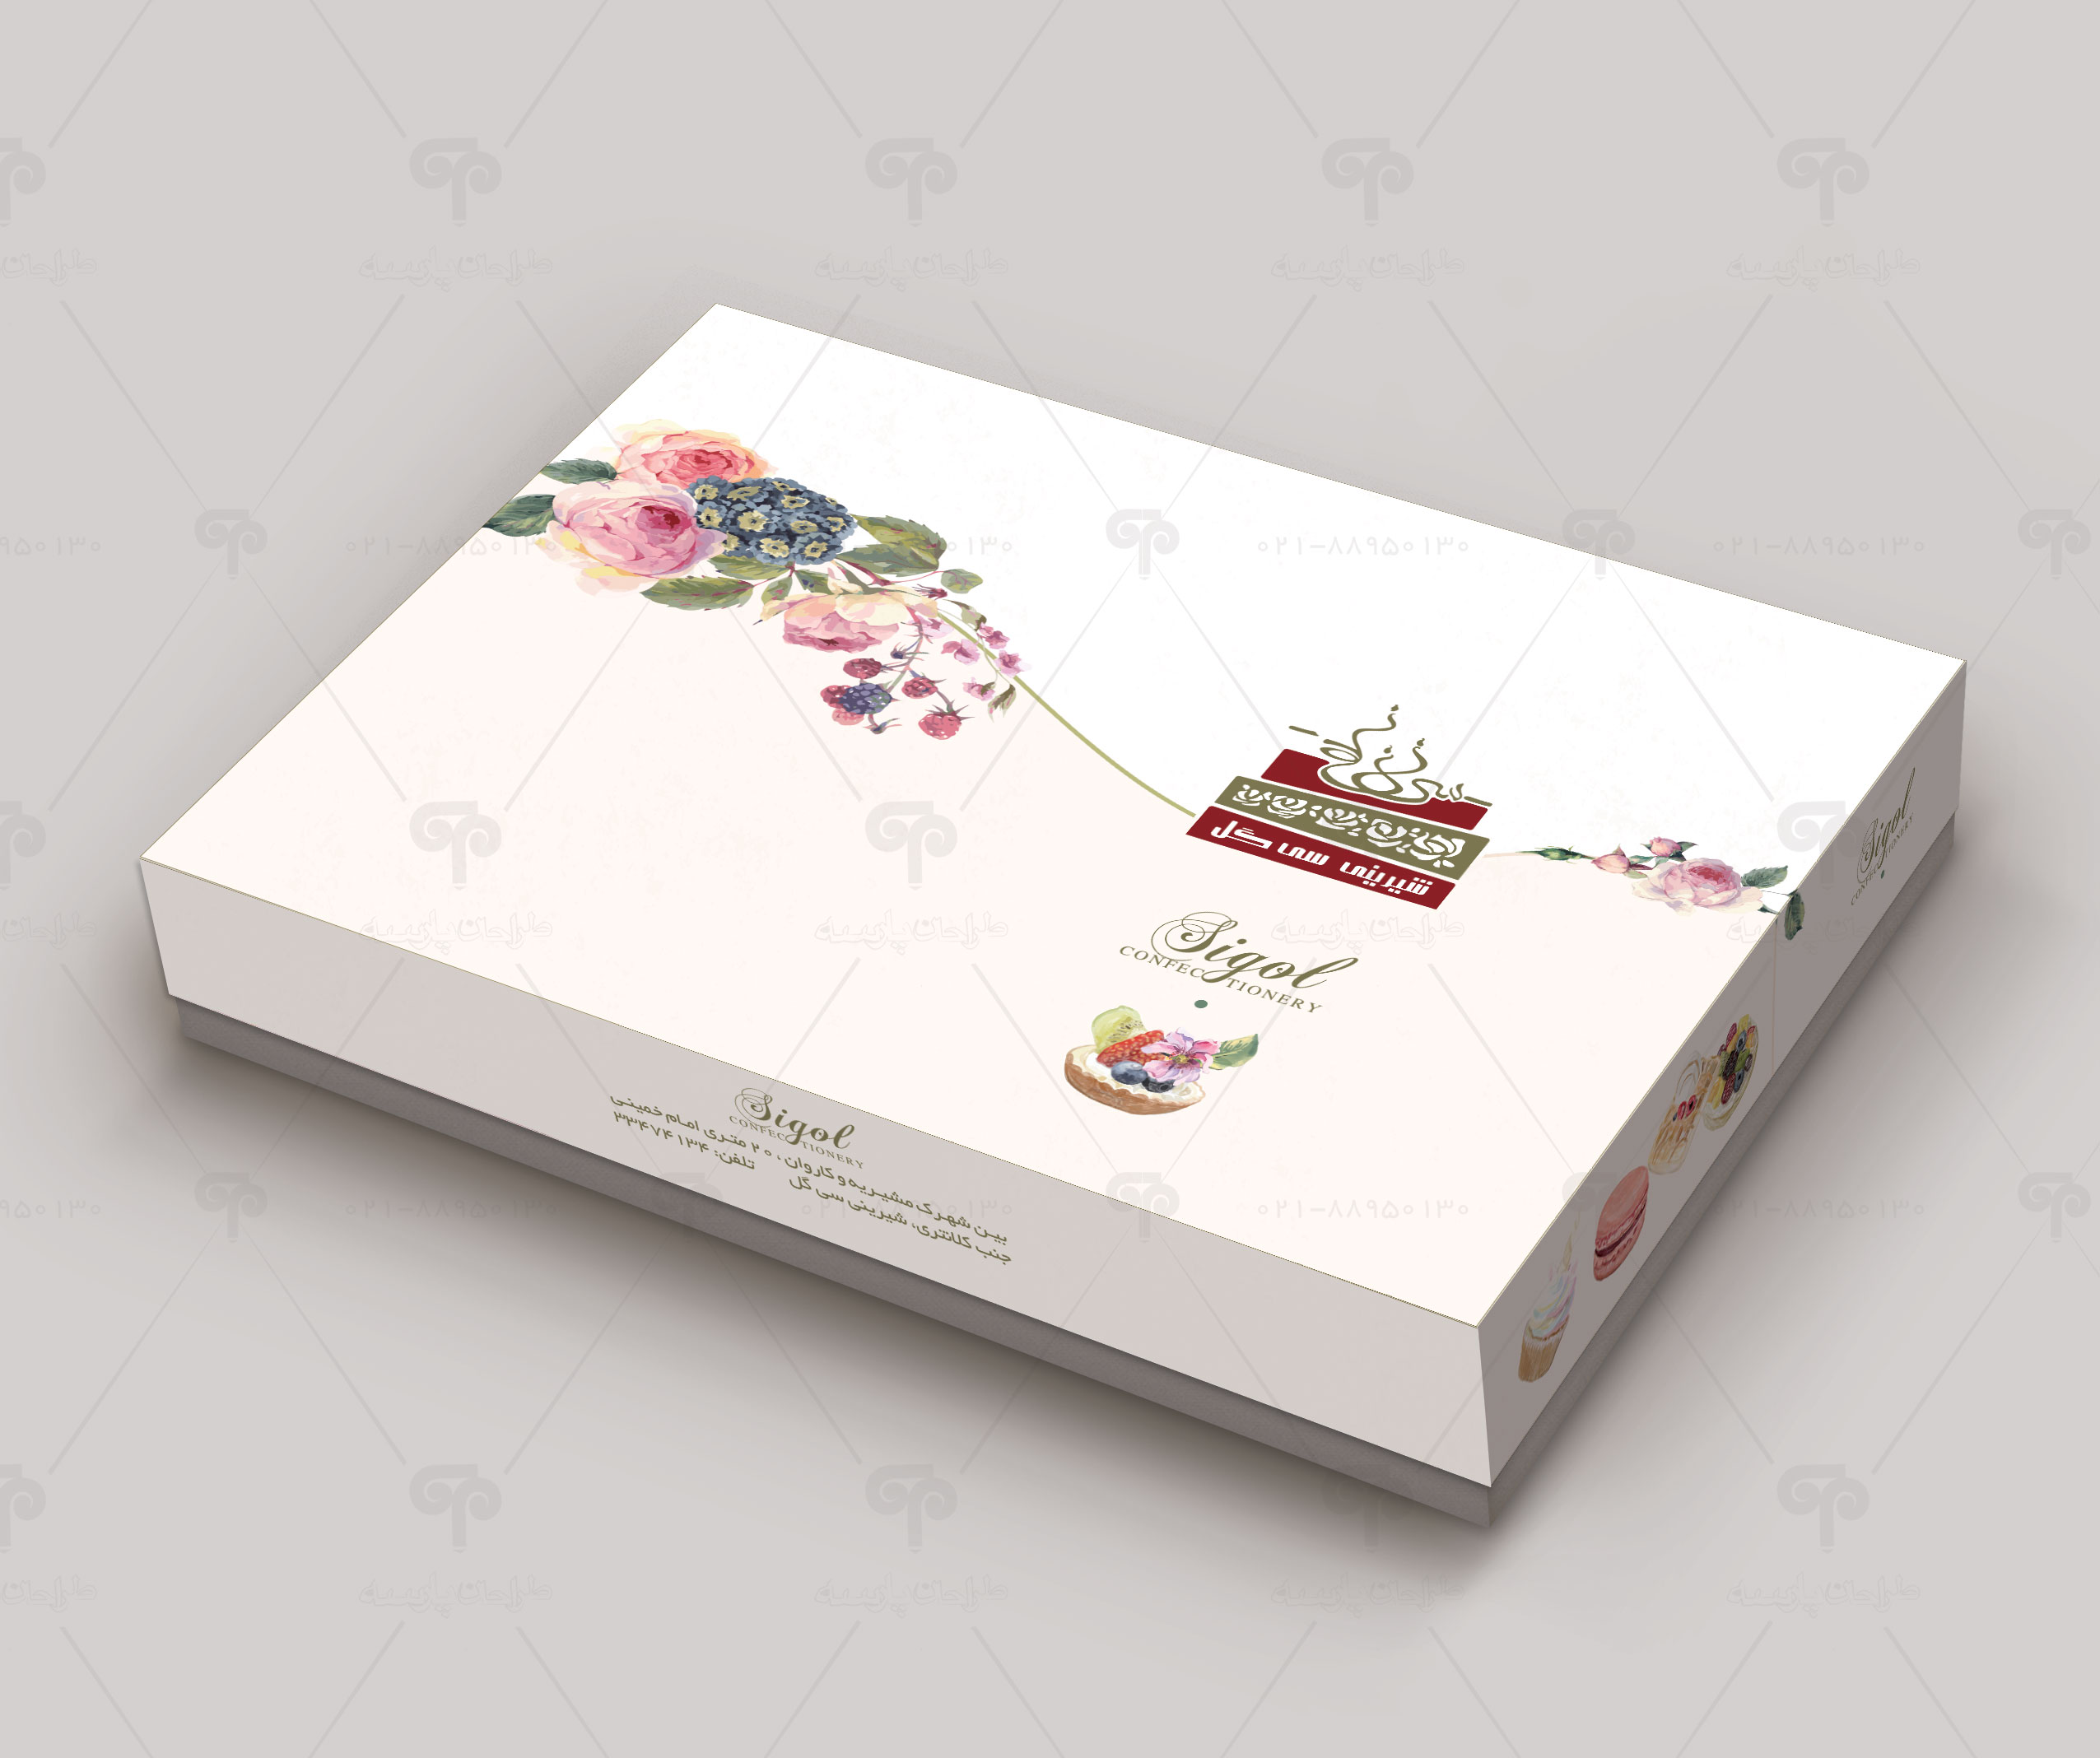 طراحی جعبه شیرینی سی گل